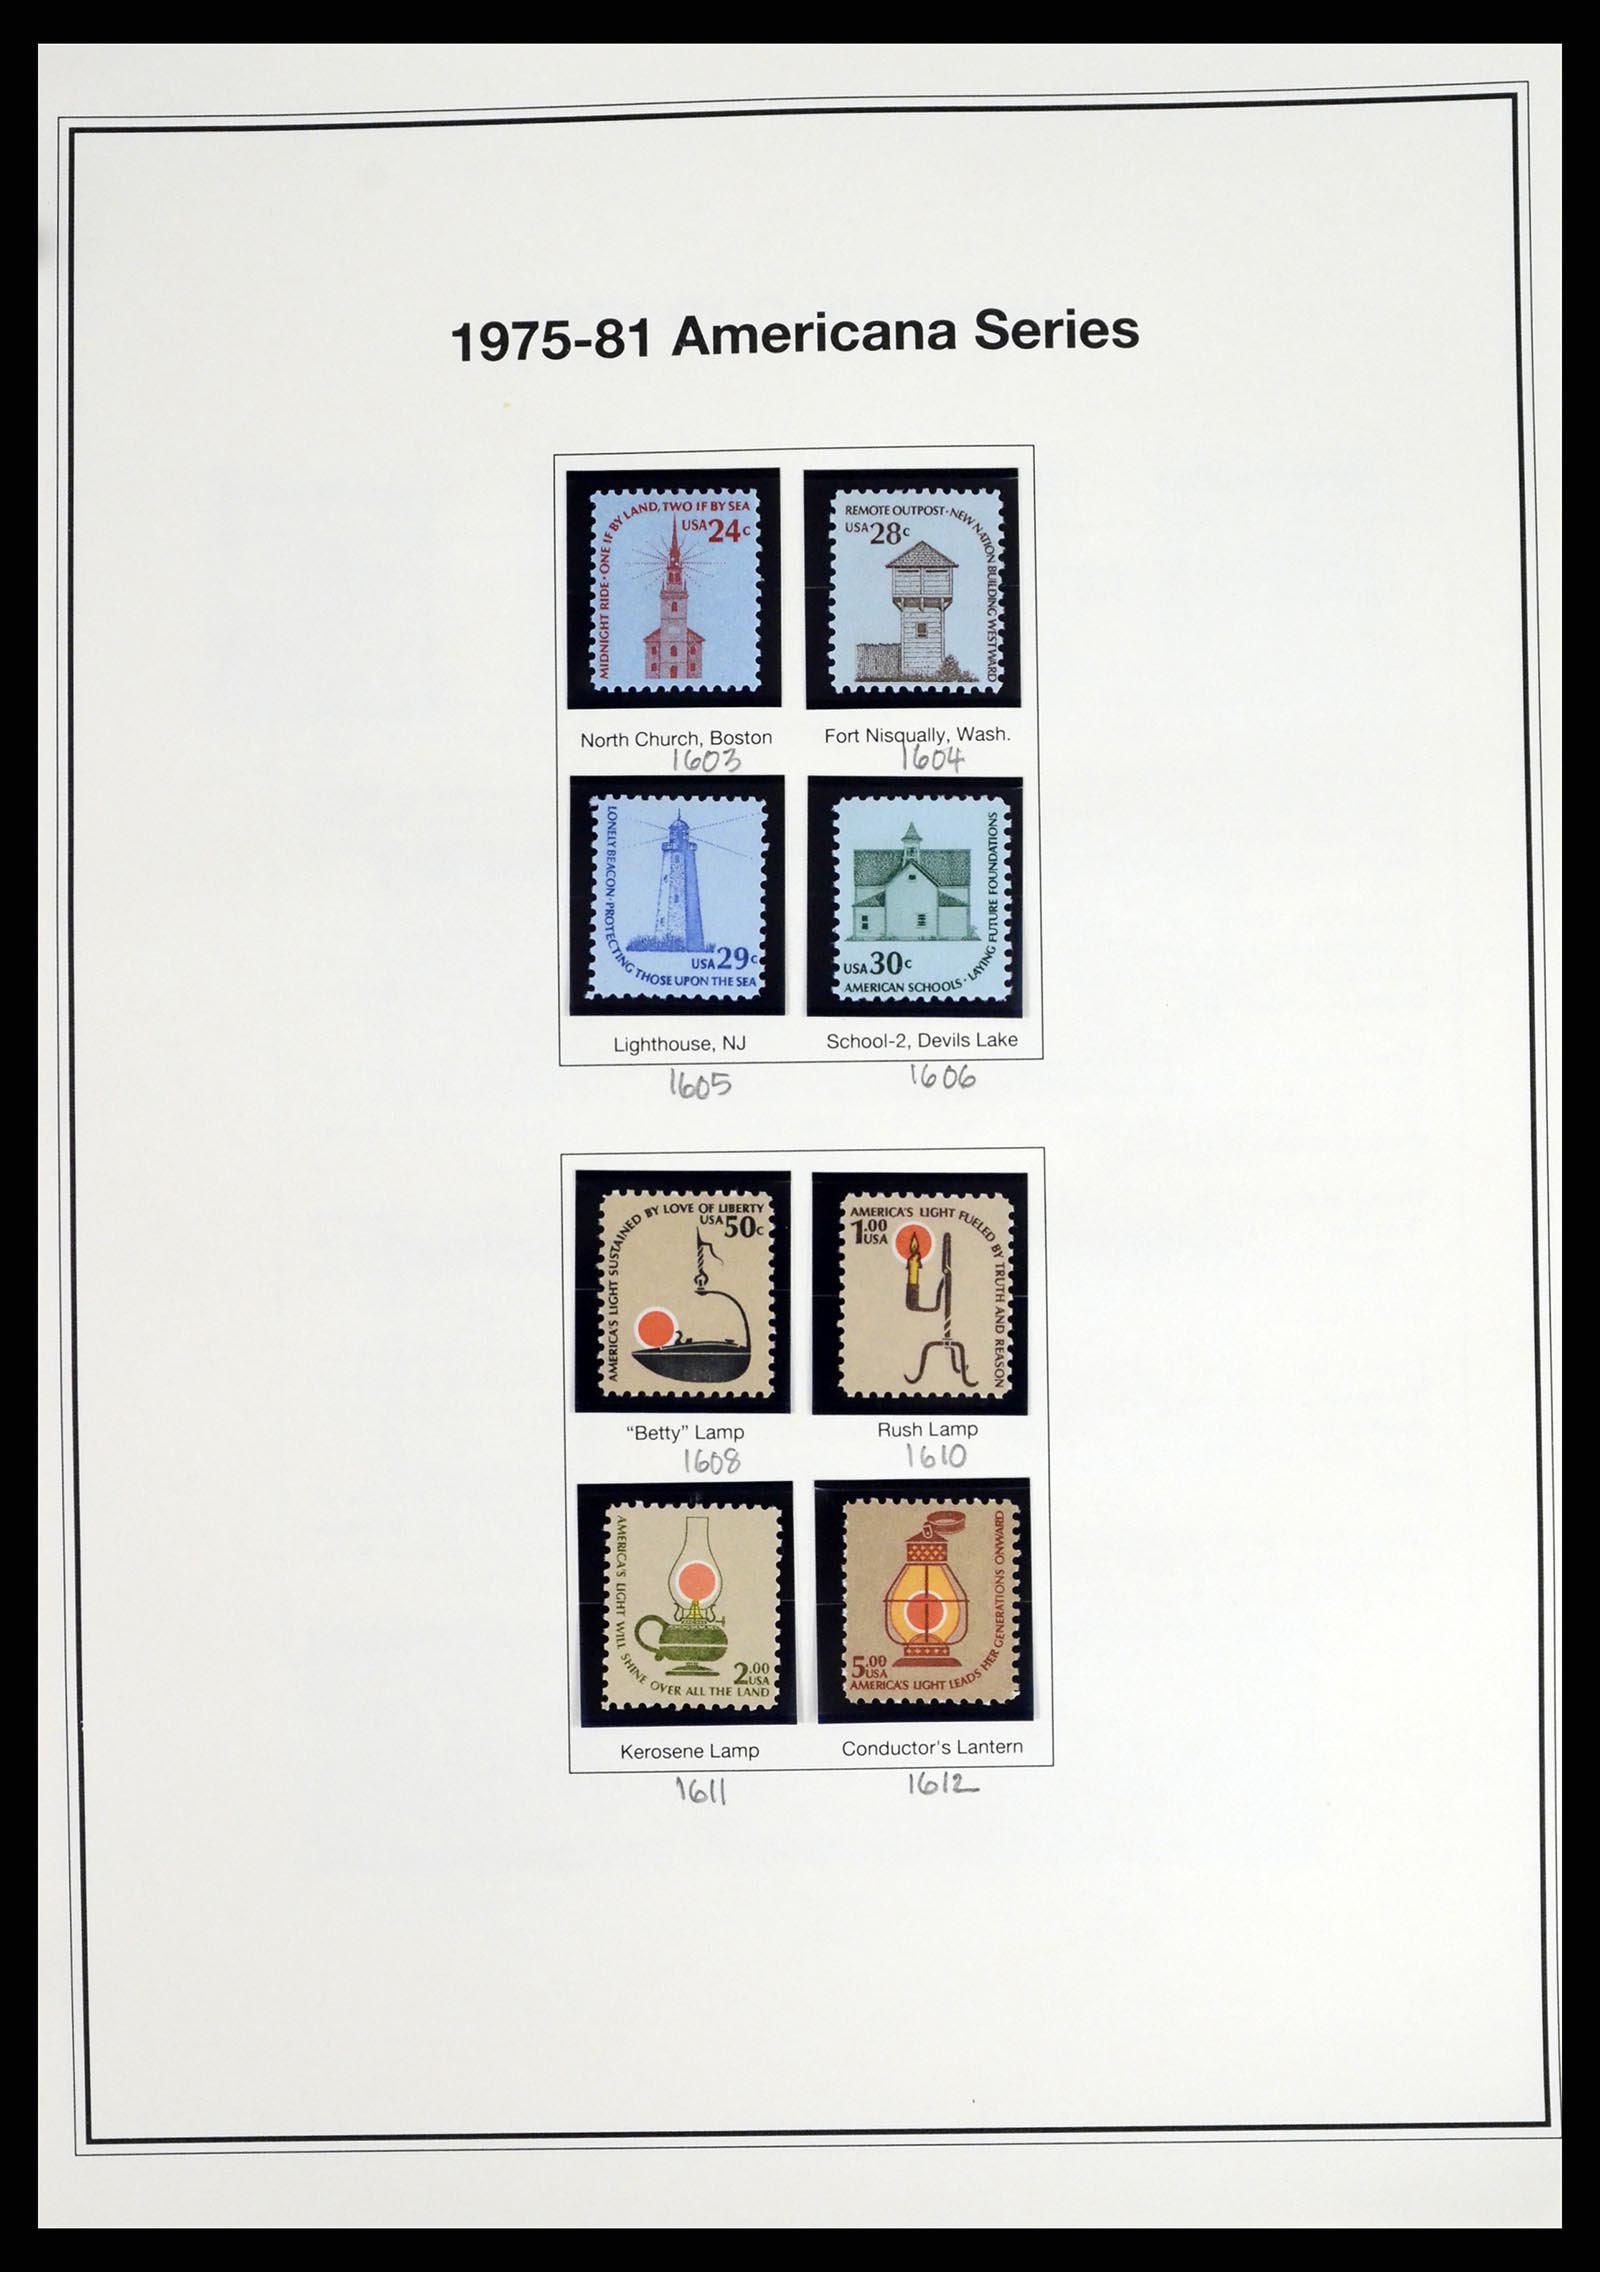 37193 026 - Stamp collection 37193 USA 1970-2020!